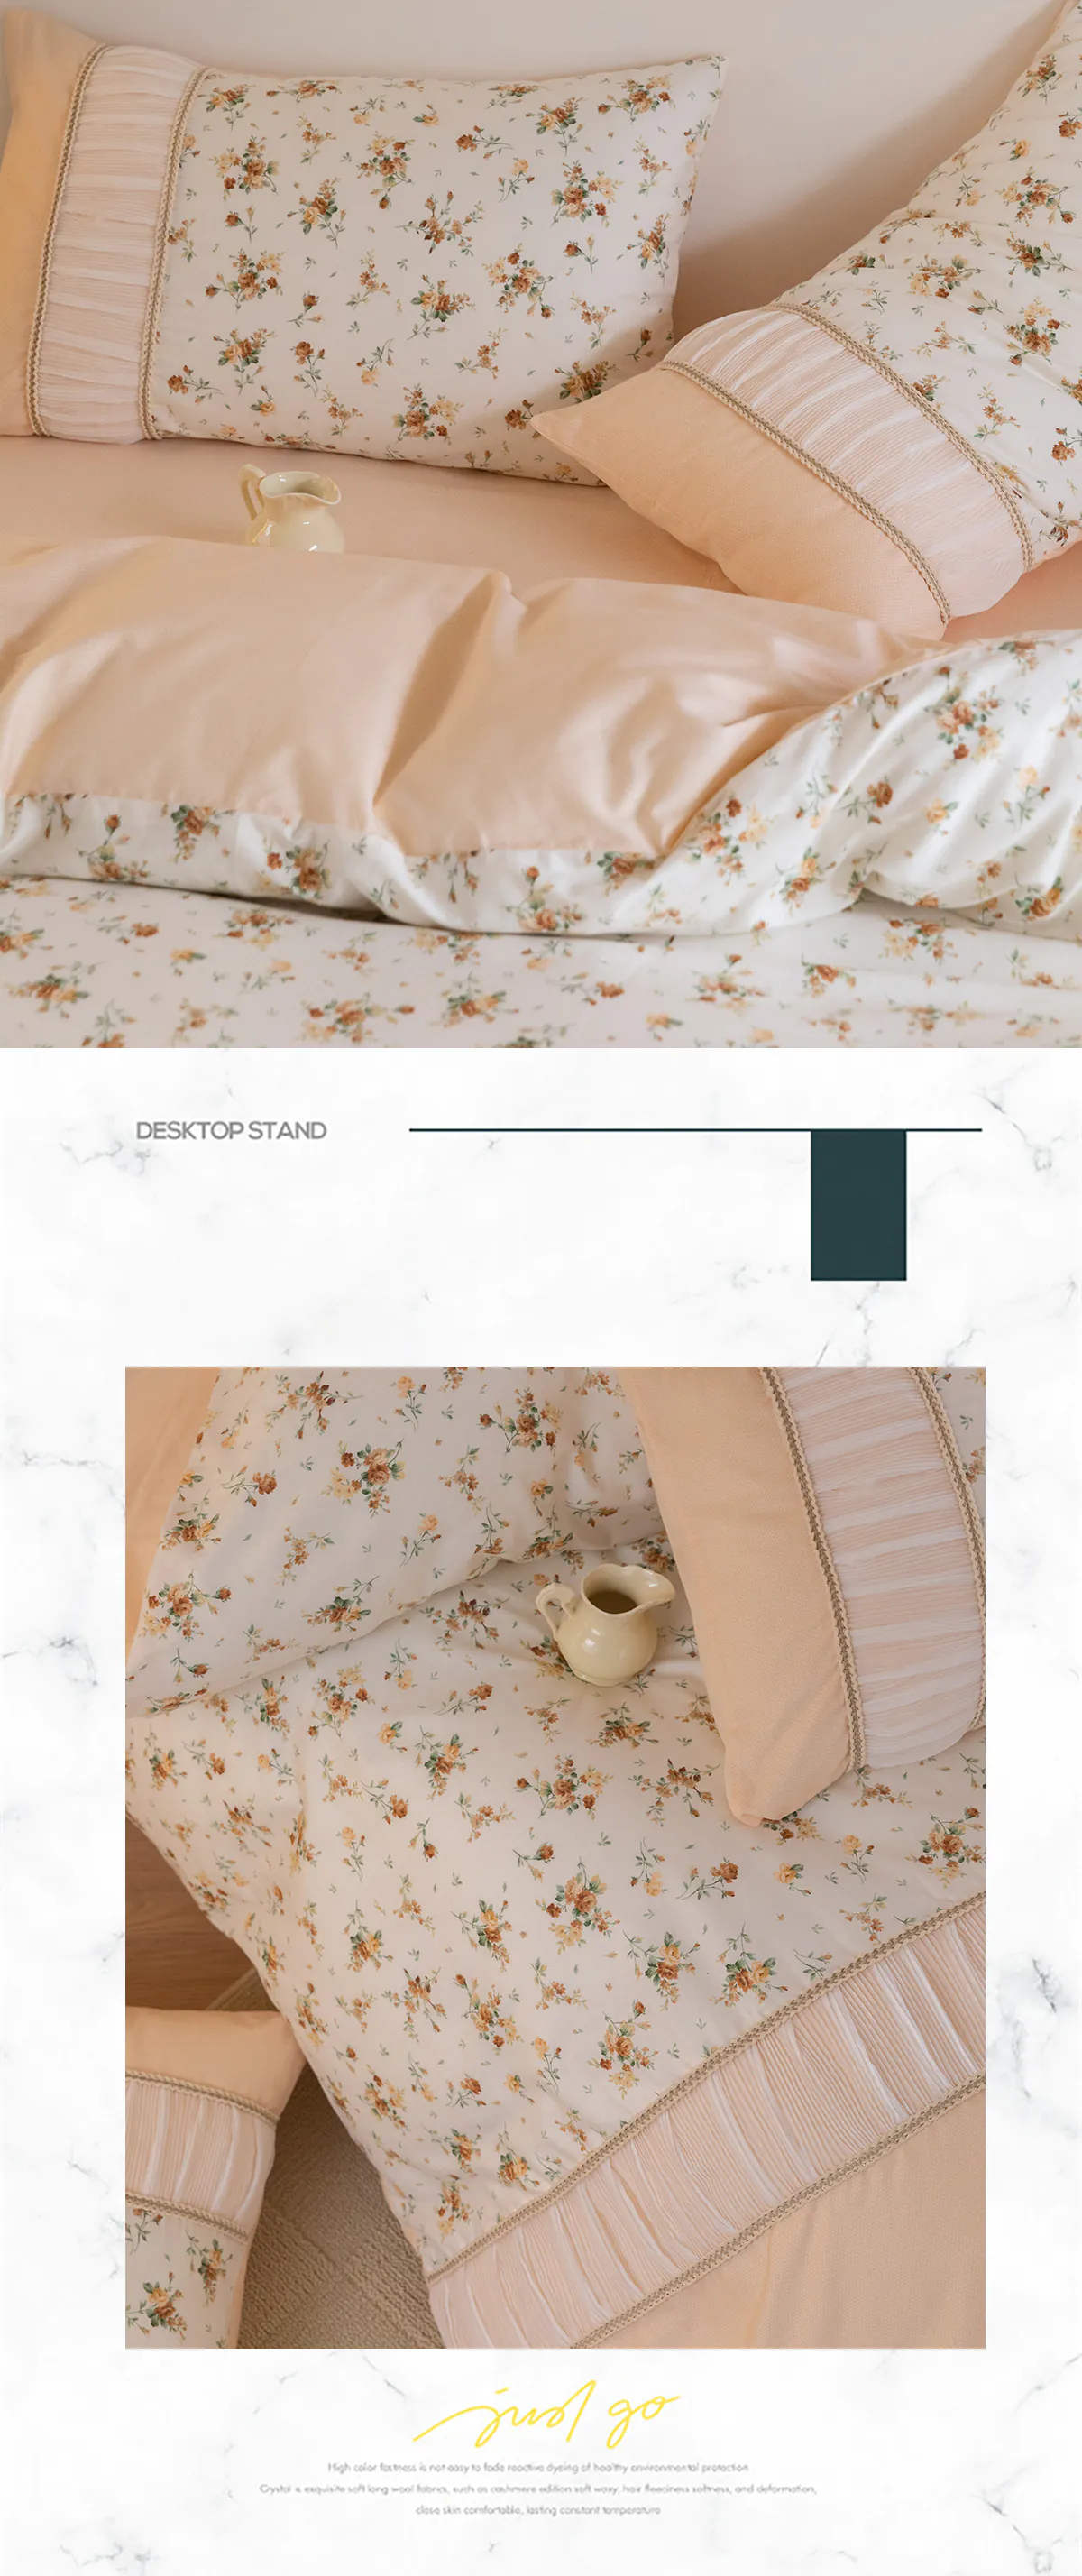 Retro-Princess-Style-100-Cotton-Floral-Duvet-Cover-Bedding-Set24